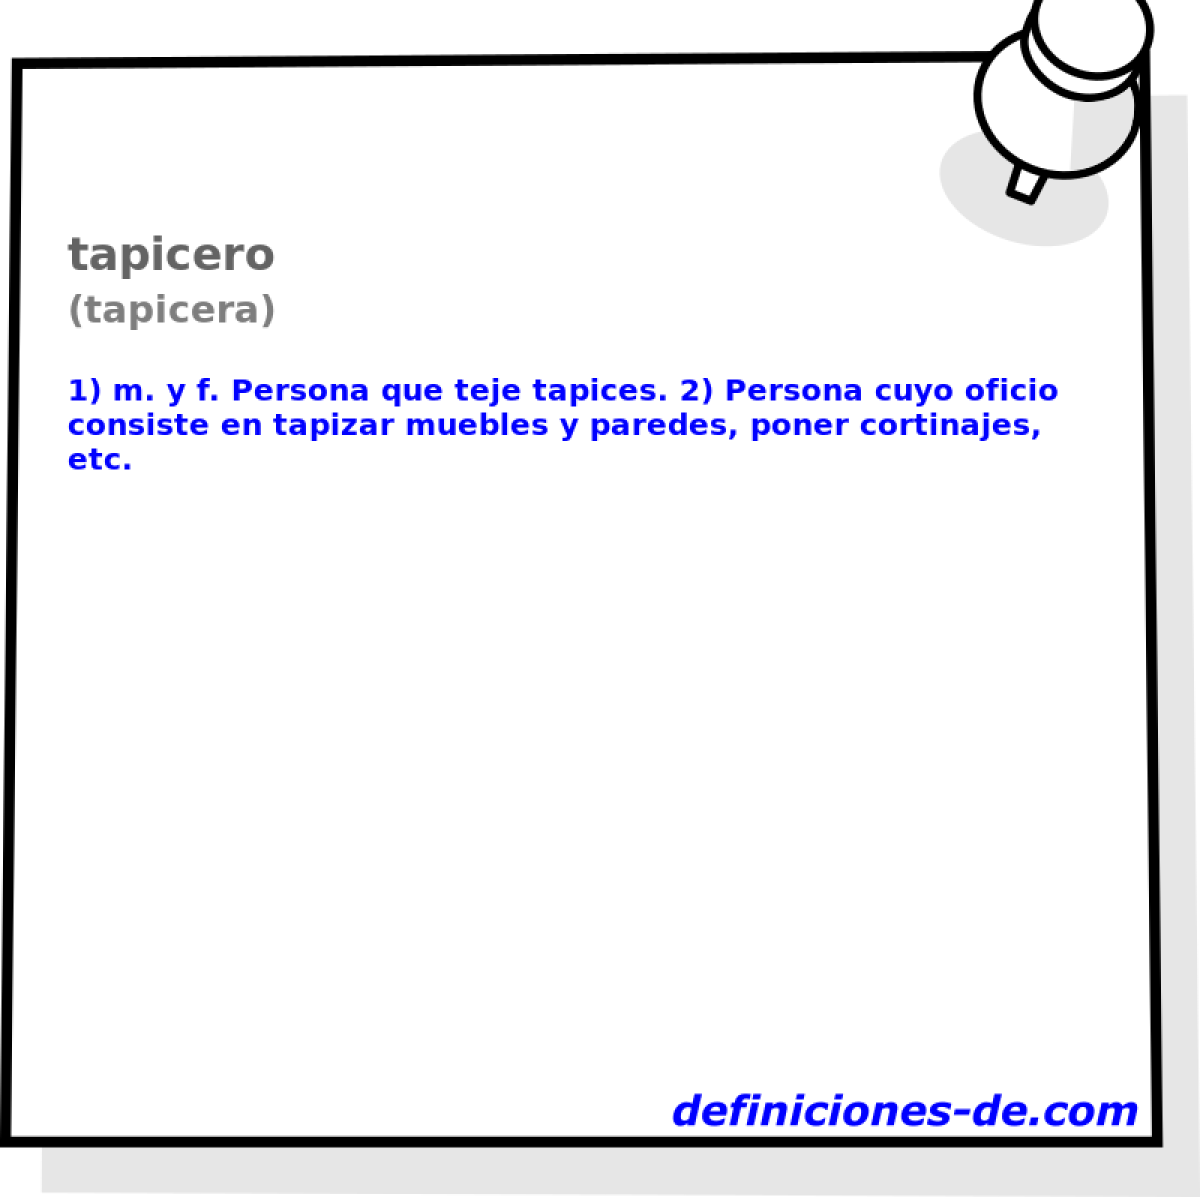 tapicero (tapicera)